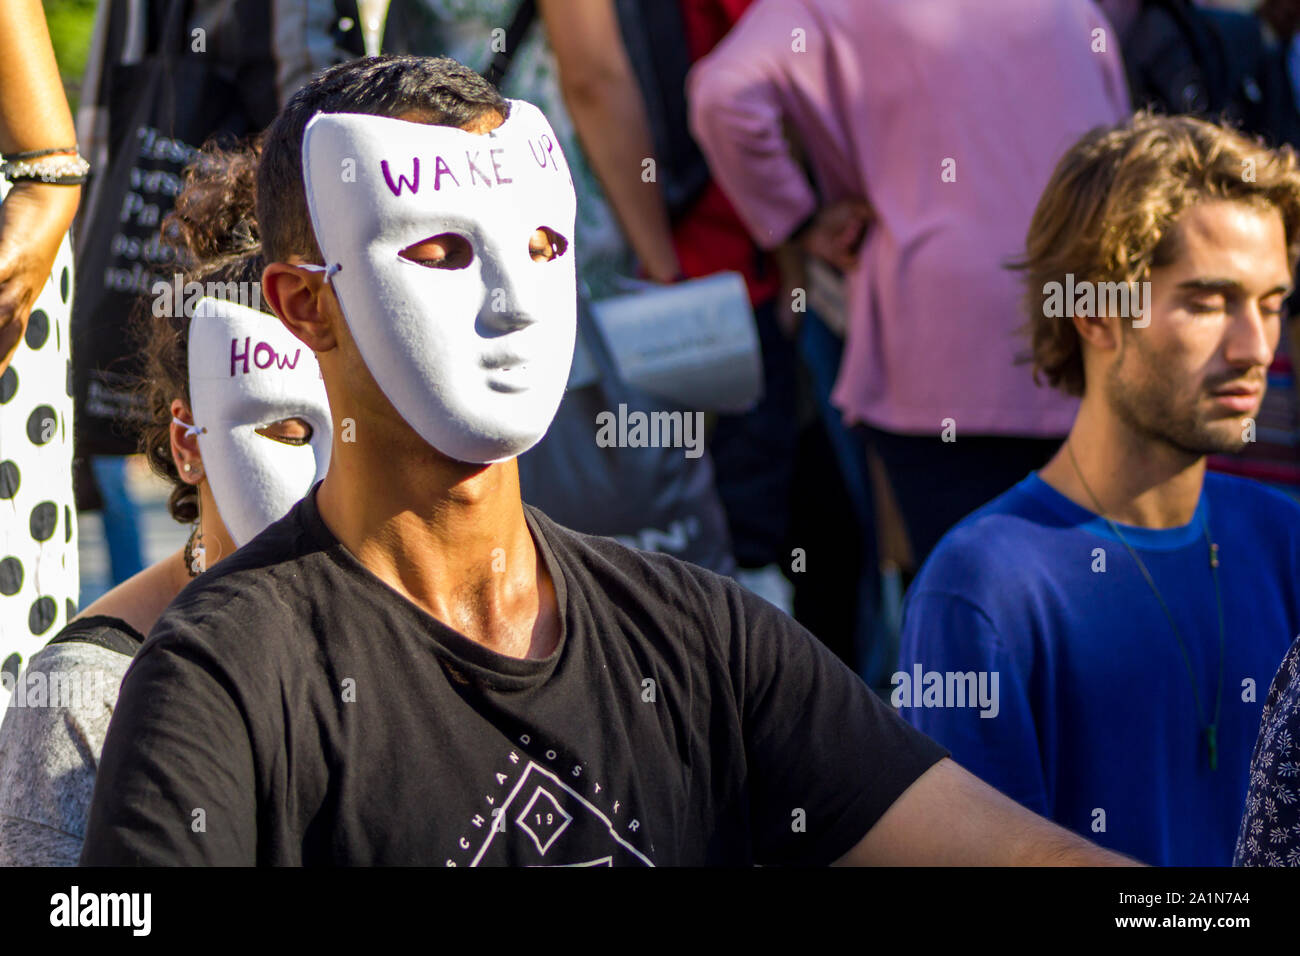 Lisbonne, Portugal- 27 septembre 2019 : Groupe de personnes assises sur le sol en silence pour protester contre les changements climatiques au climat mondial grève Banque D'Images